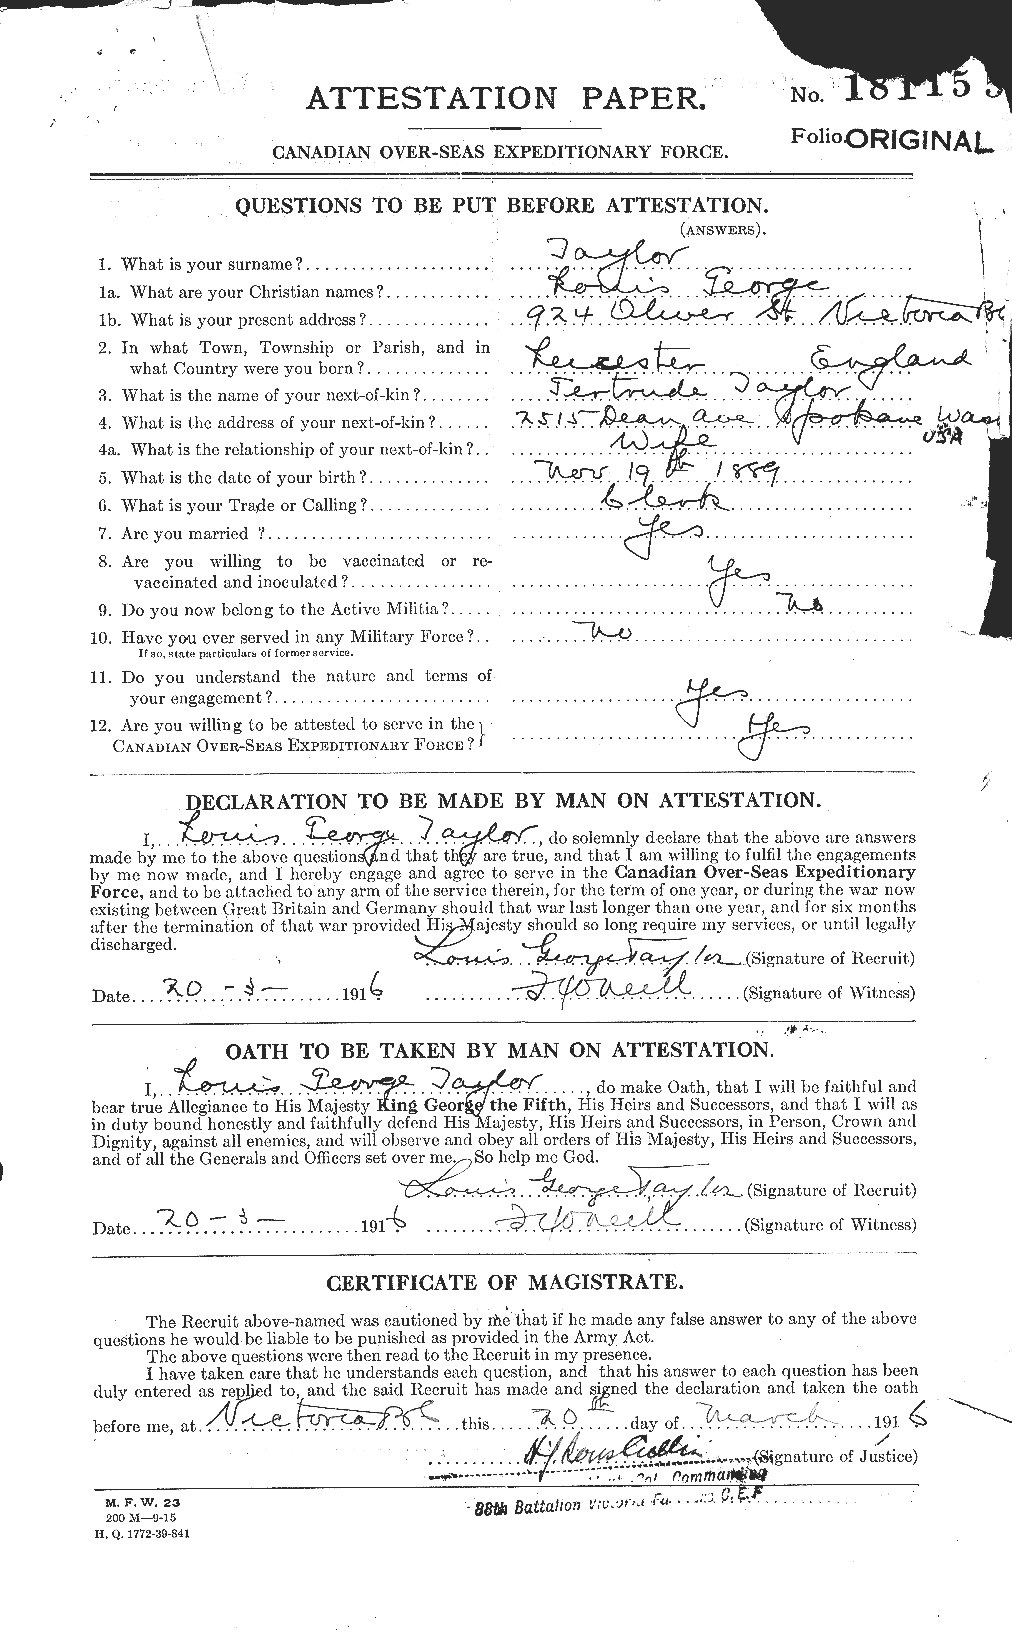 Dossiers du Personnel de la Première Guerre mondiale - CEC 627670a